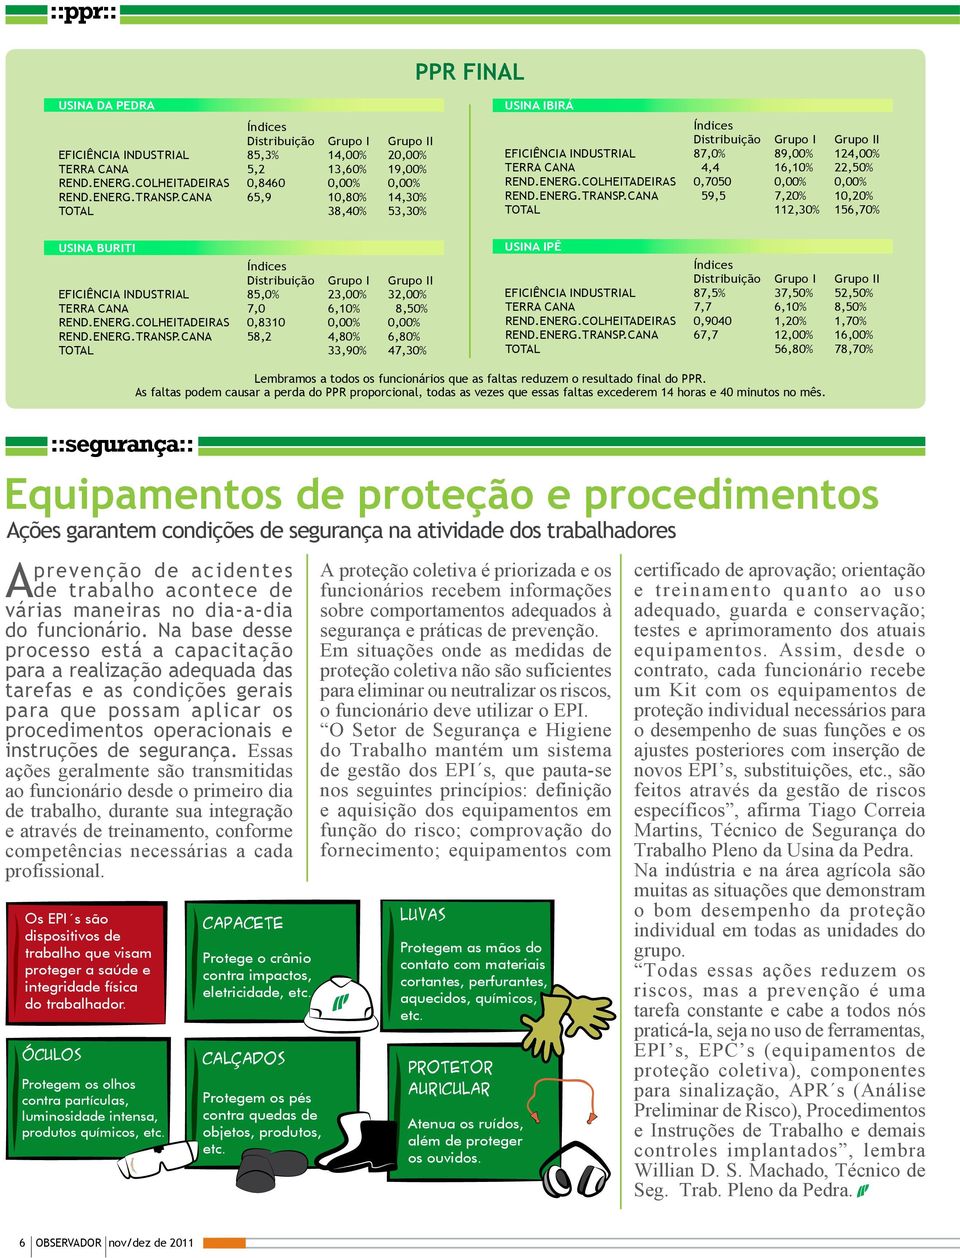 COLHEITADEIRAS 0,7050 0,00% 0,00% REND.ENERG.TRANSP.